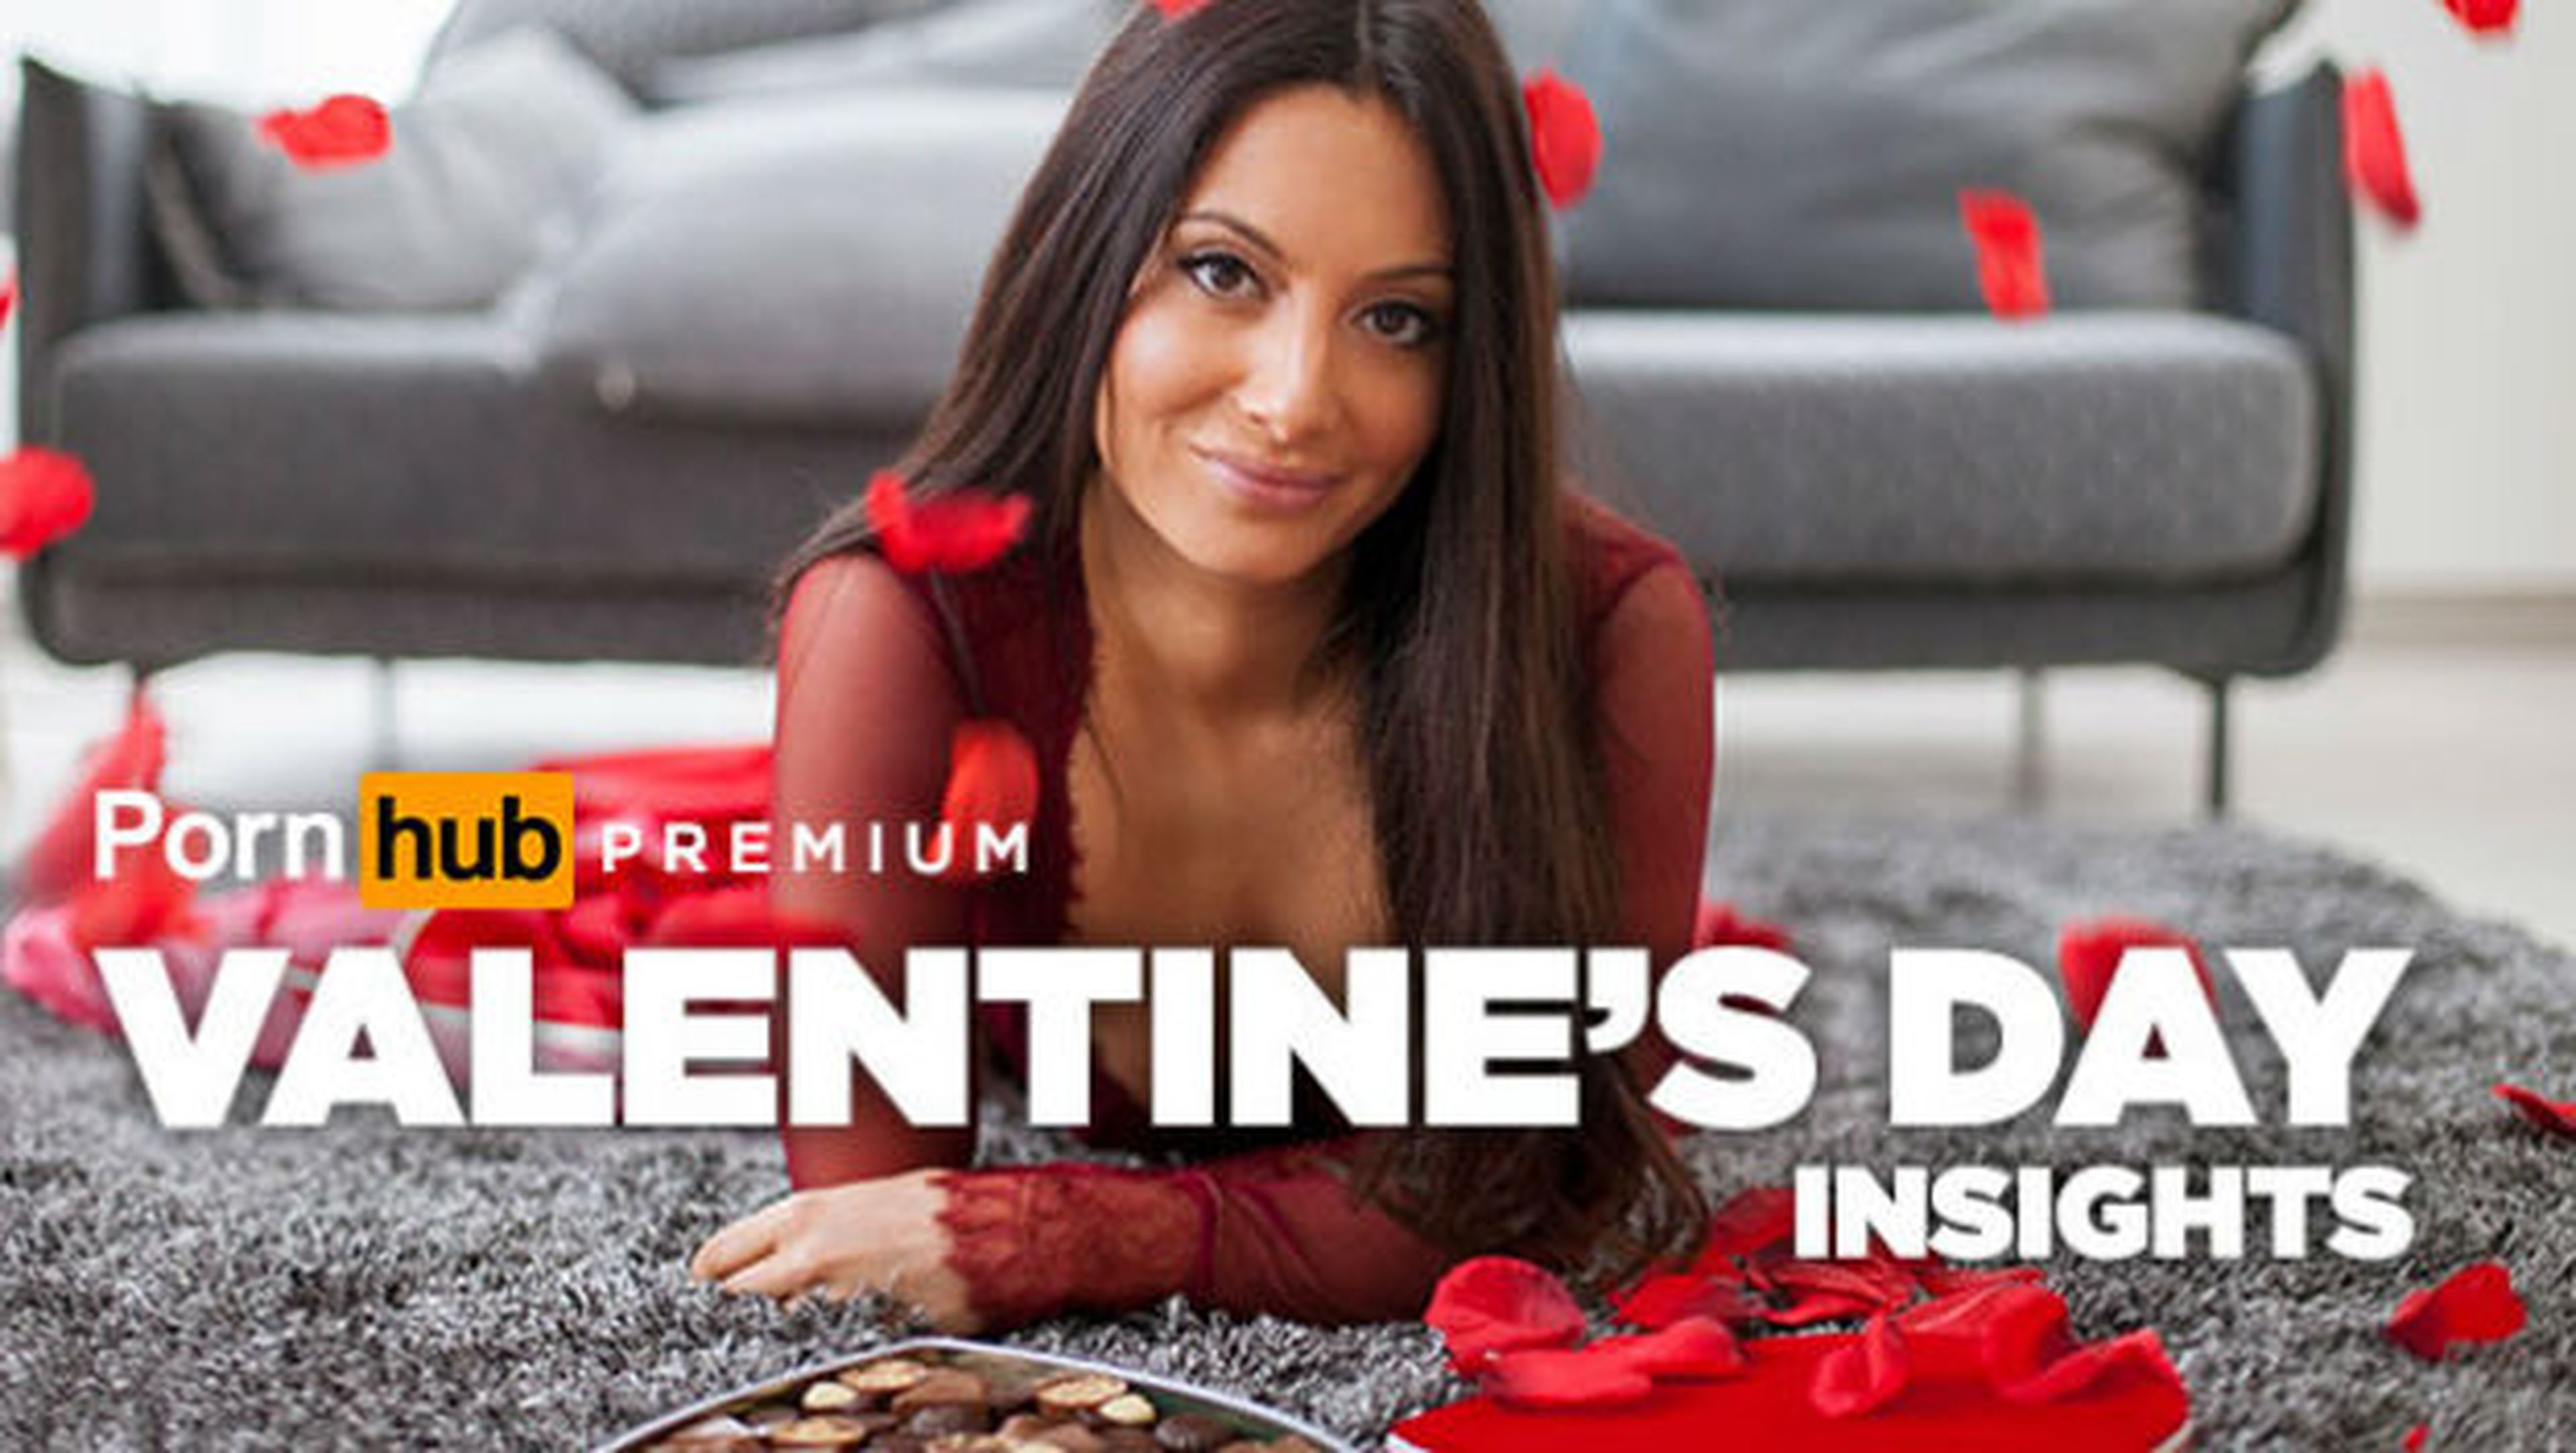 Pornhub regala un día de porno premium gratis por San Valentín.